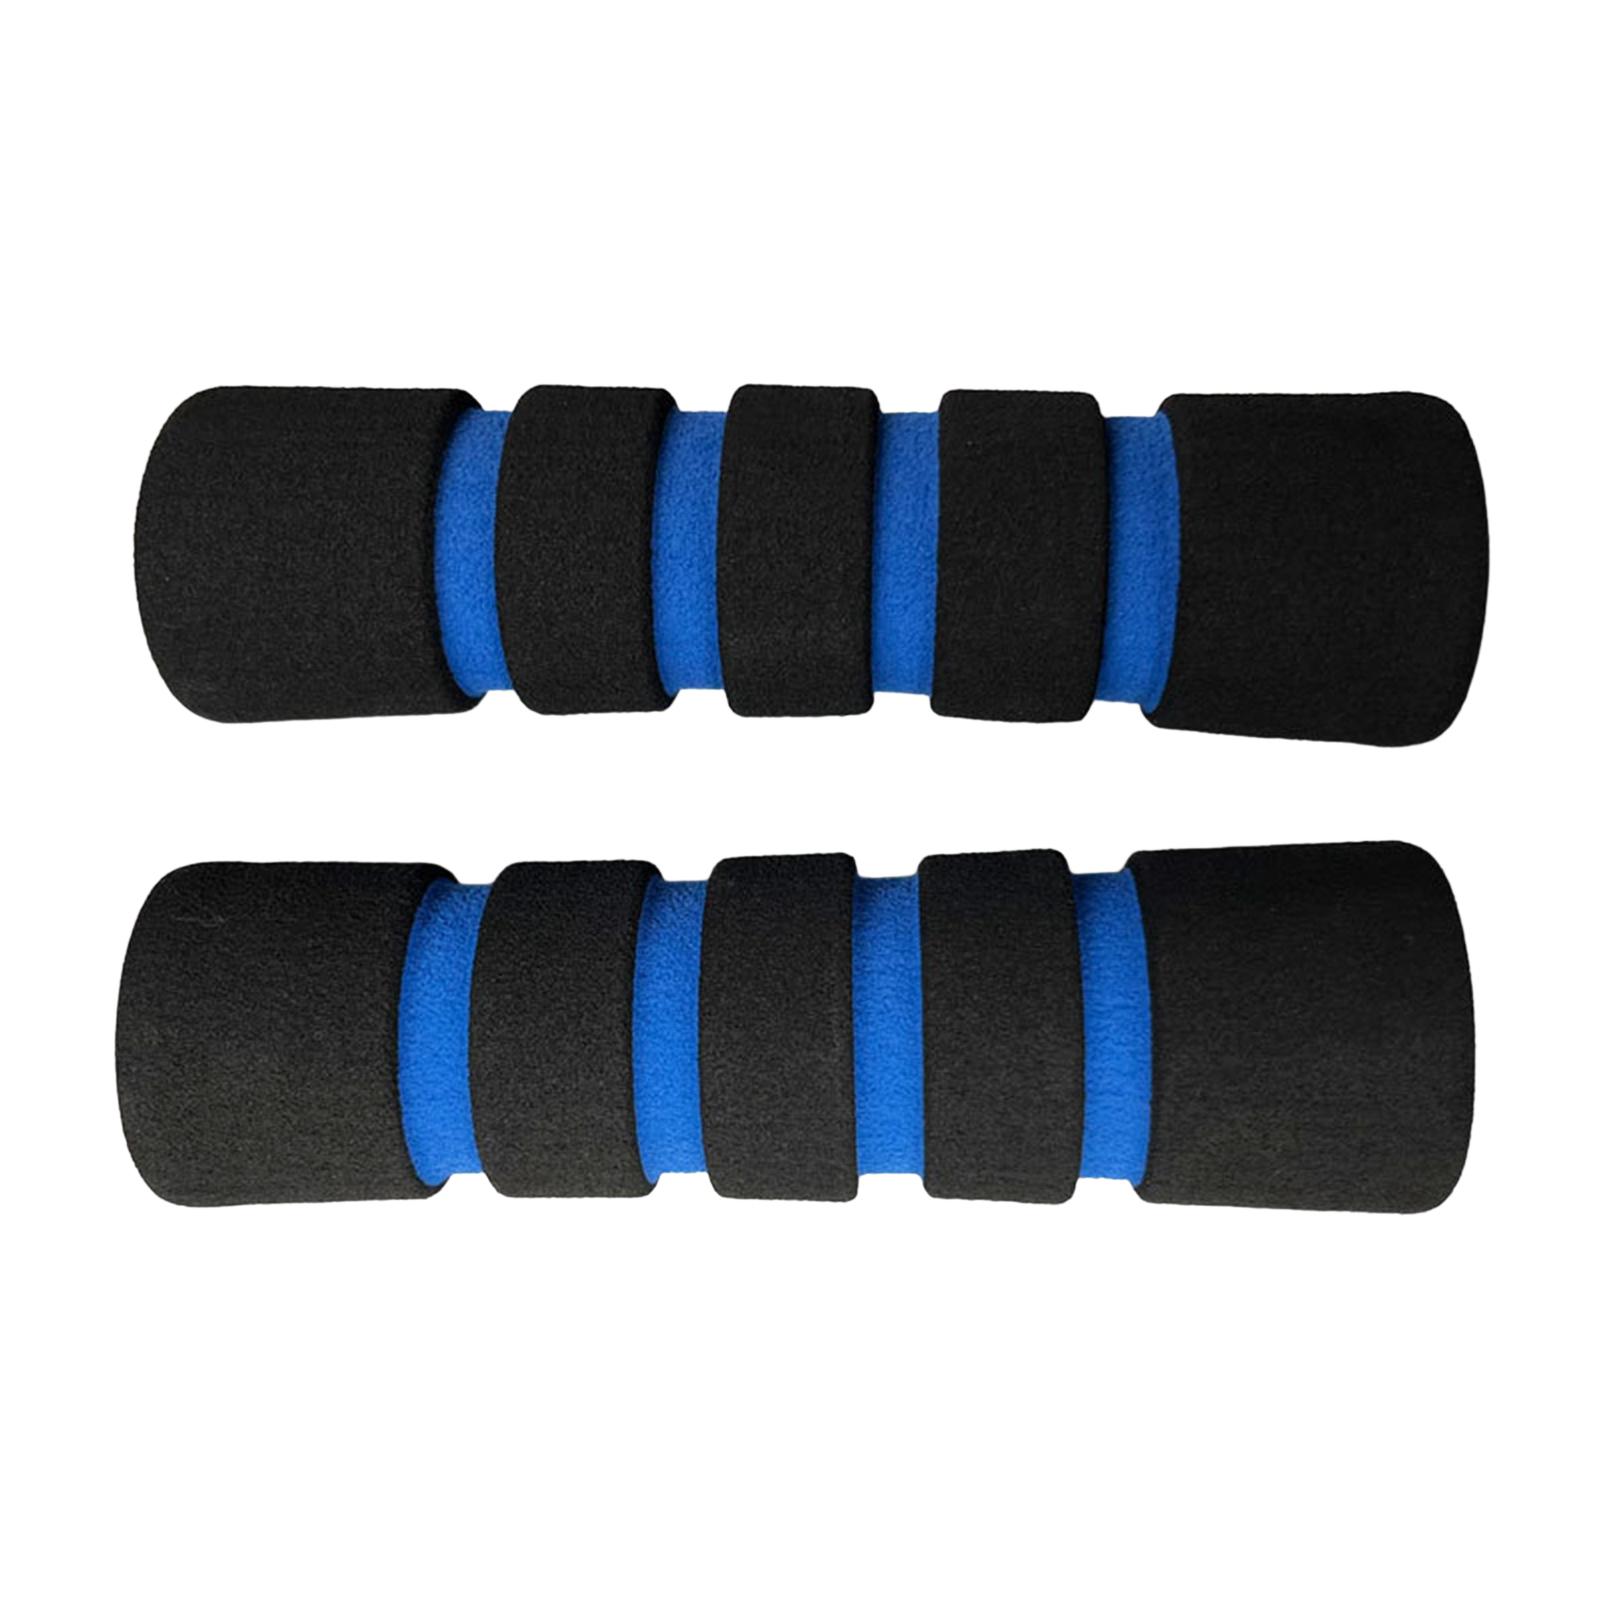 Sponge Foam Sleeve Fitness Equipment for Strength Training Workout Bench Armrest Blue